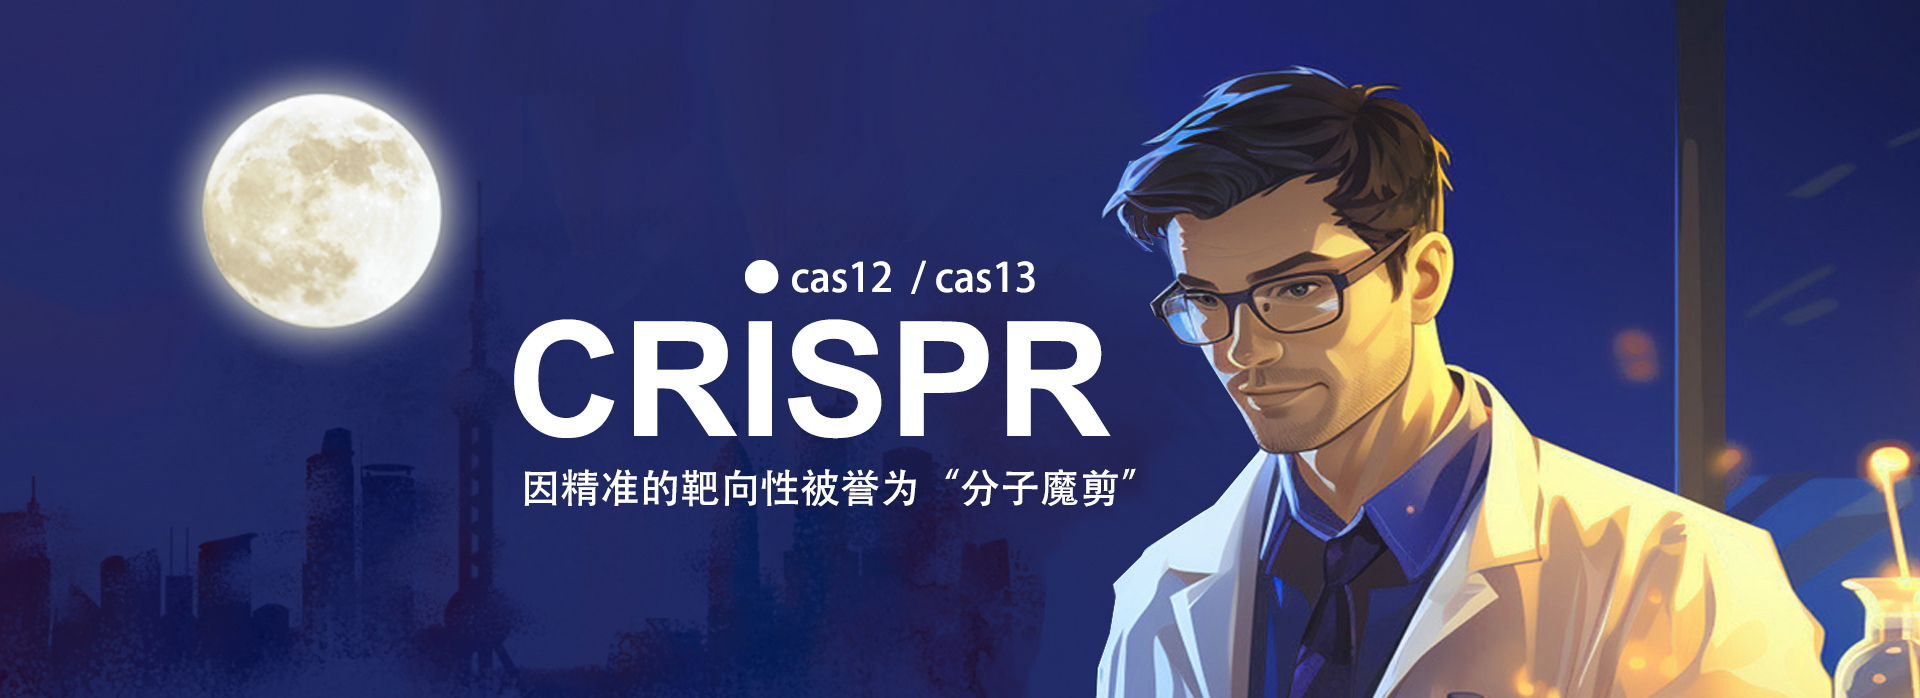 CRISPR - Cas 12 /Cas 13